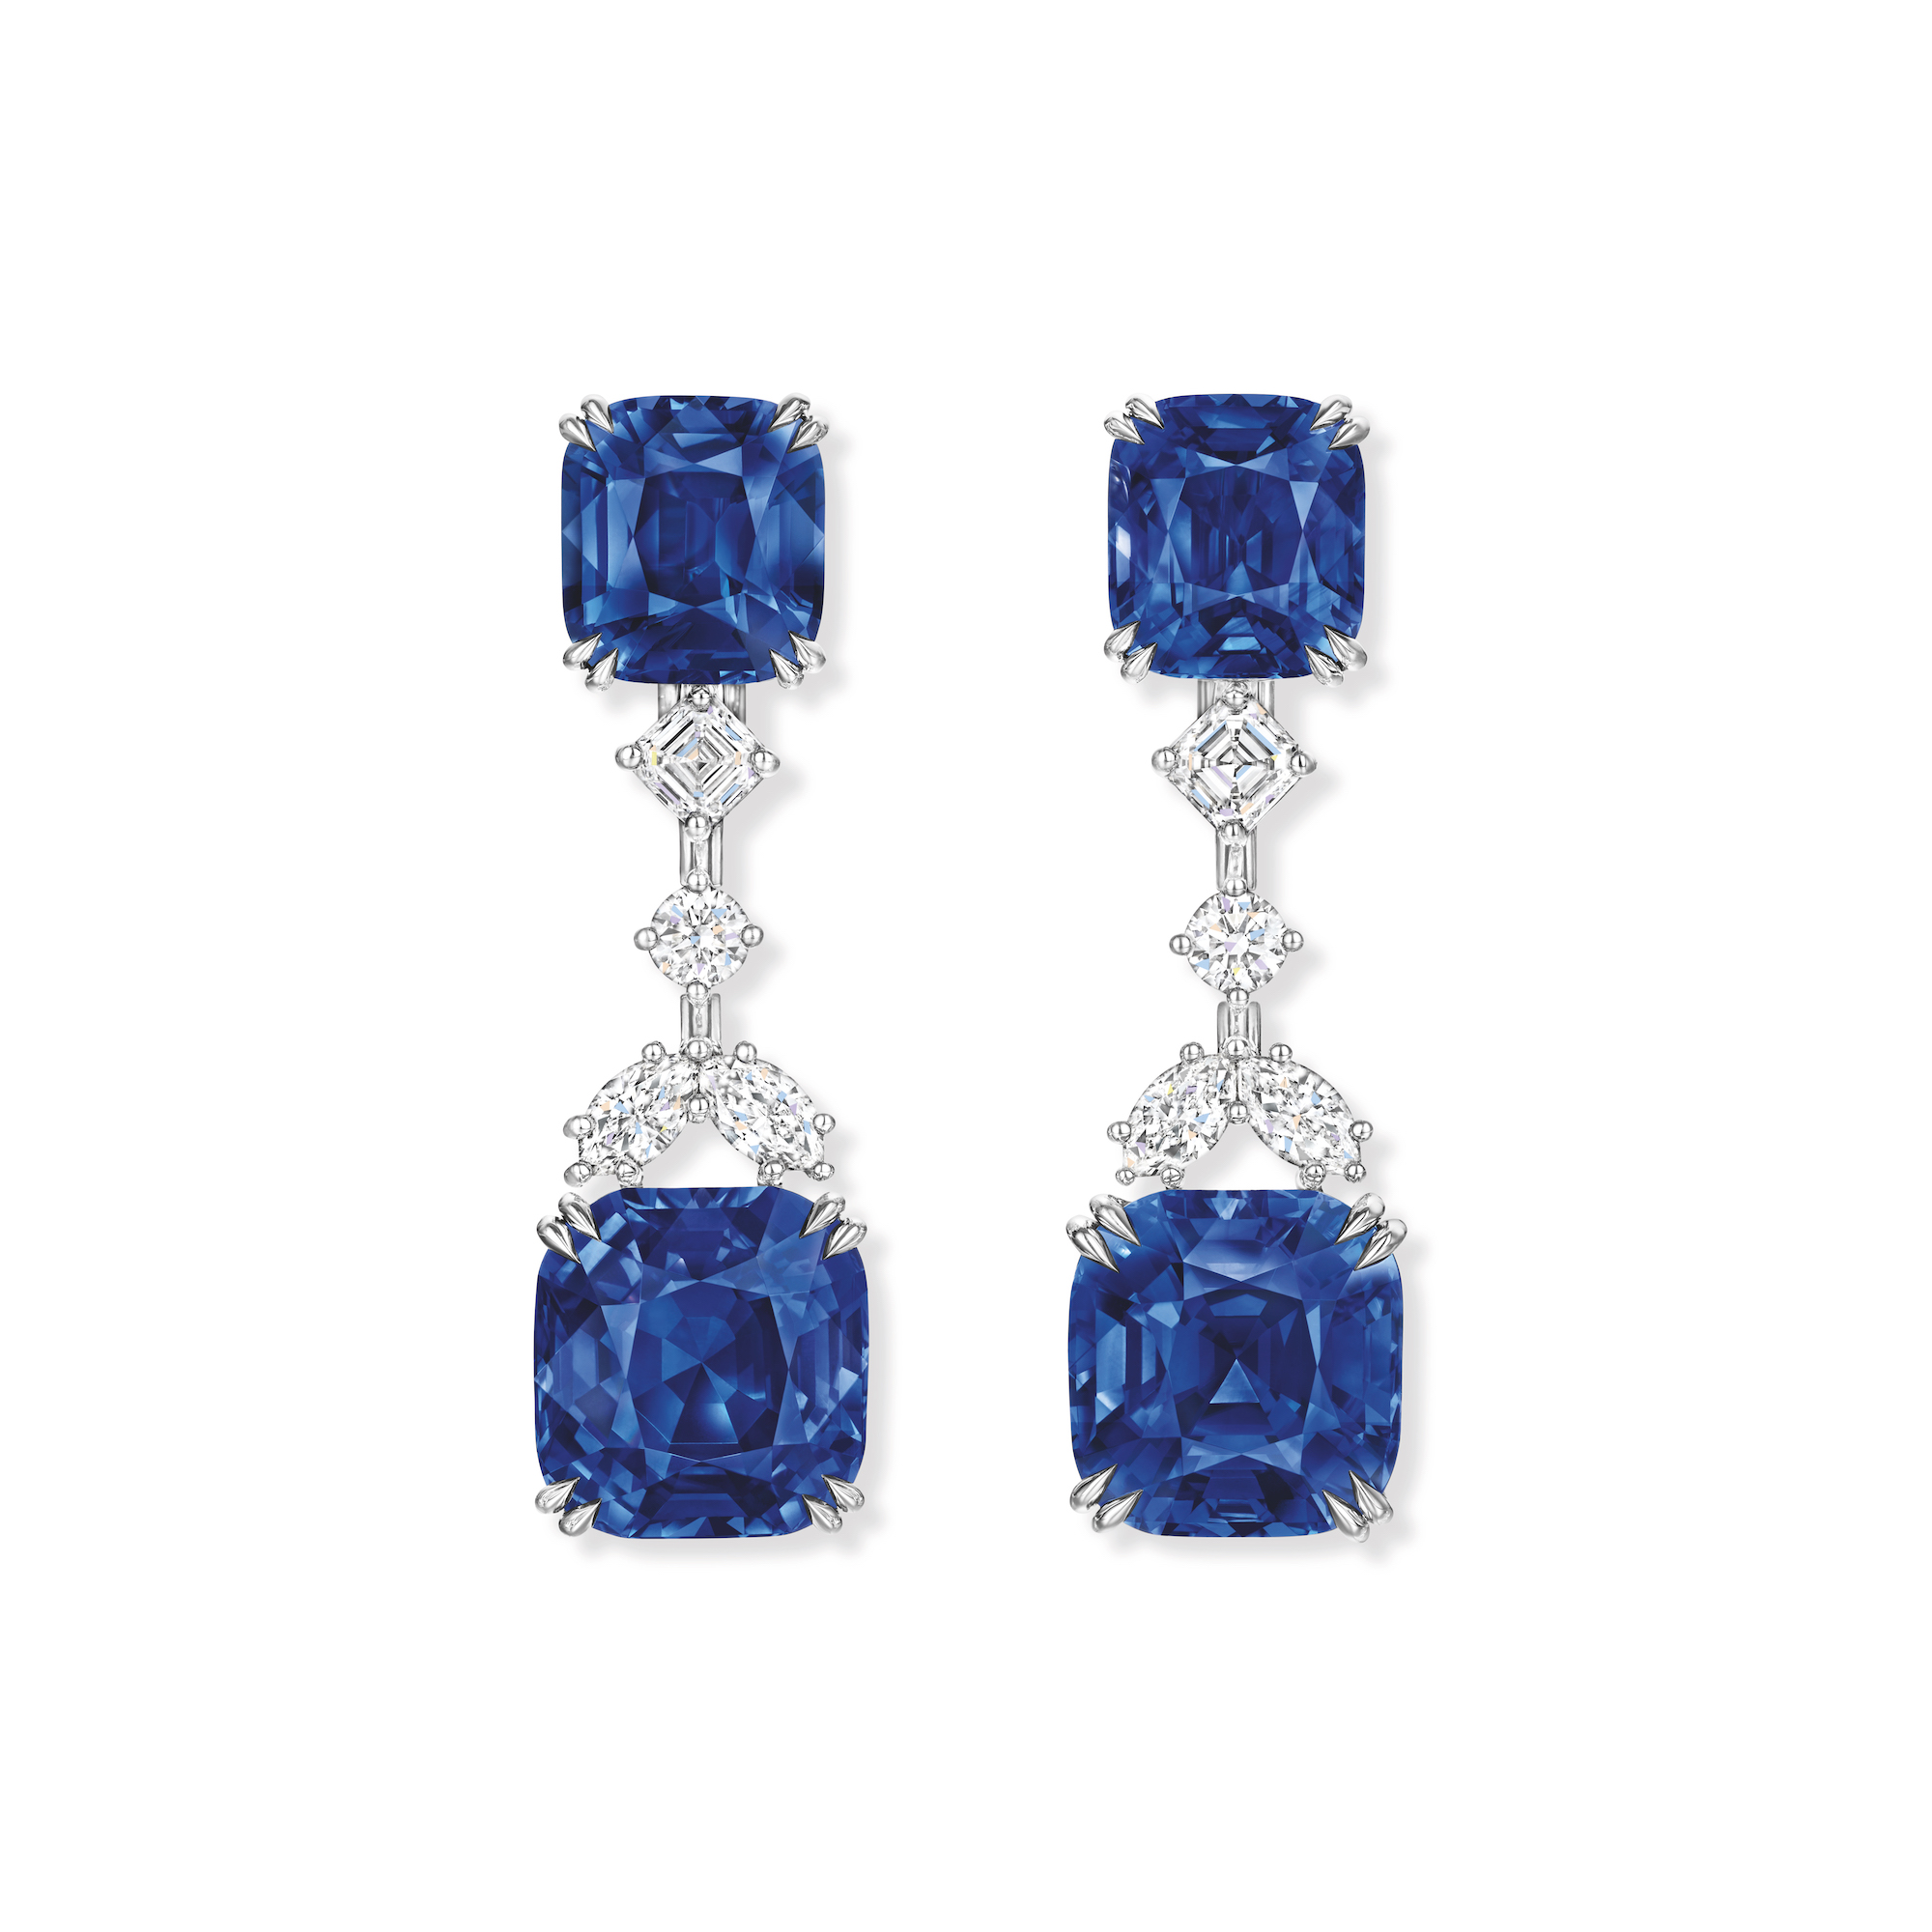 顶级珠宝系列蓝宝石钻石耳环，价格店洽。图／Harry Winston提供